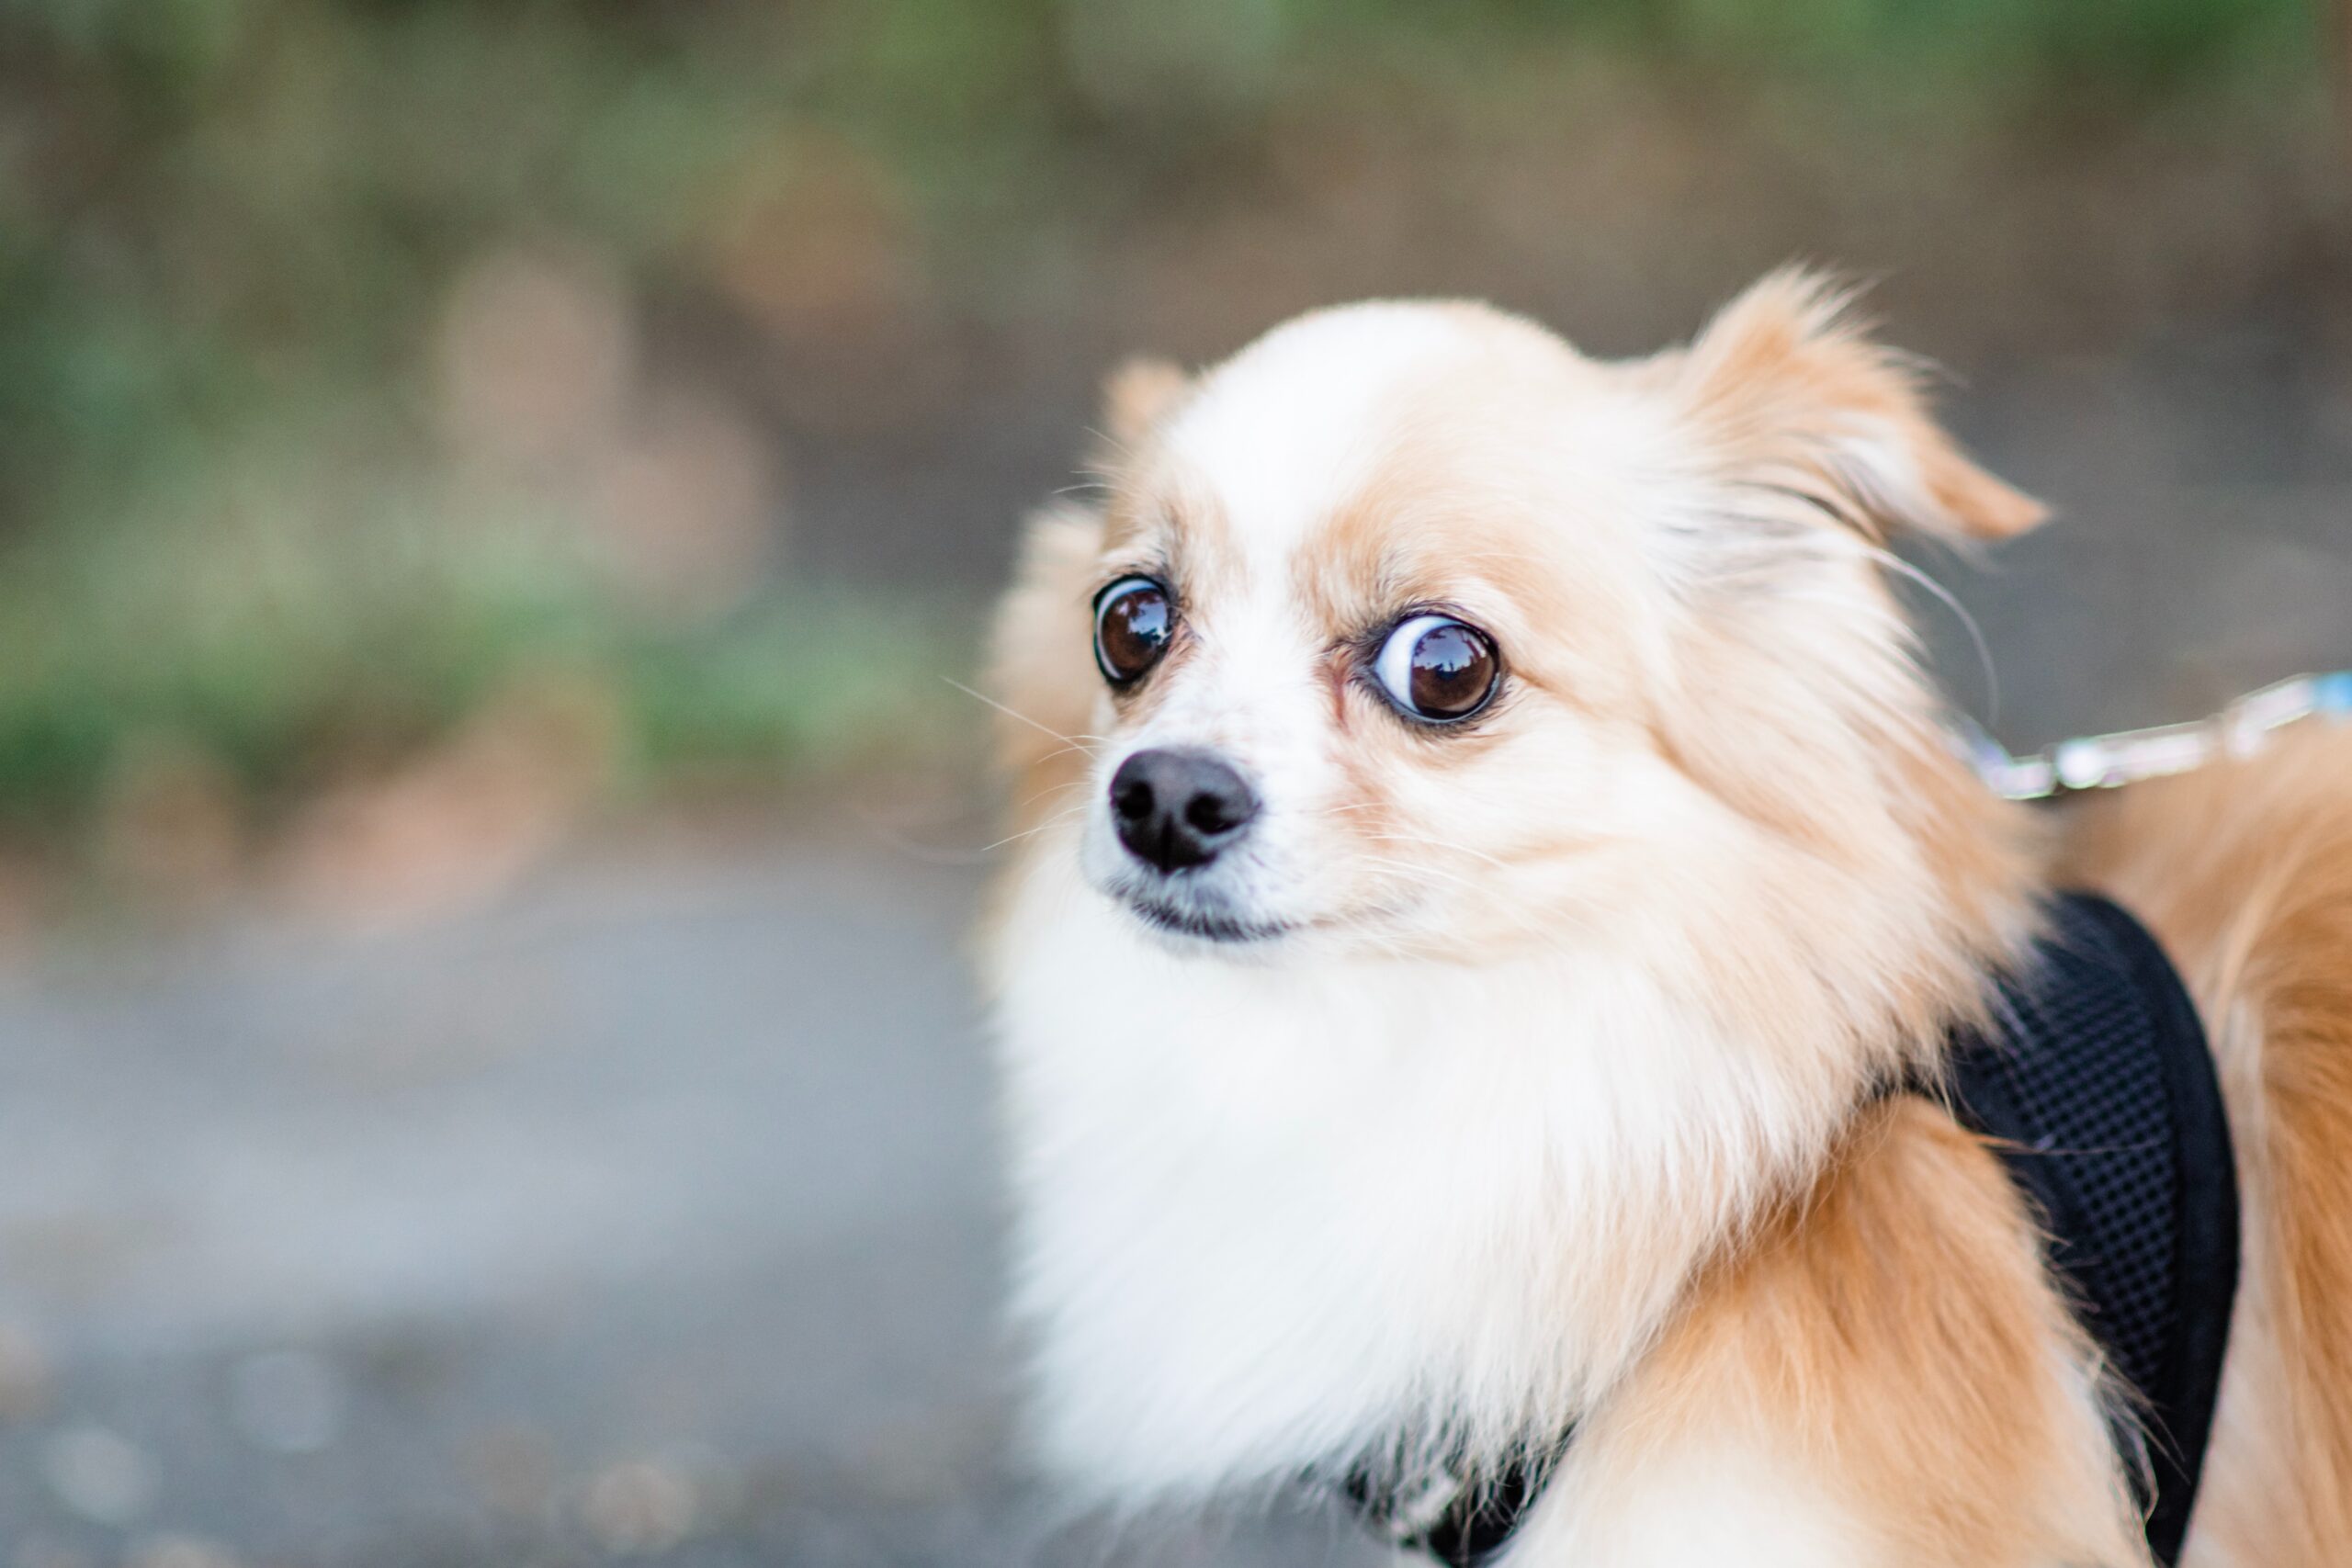 Pomeranian dog looking scared toward camera